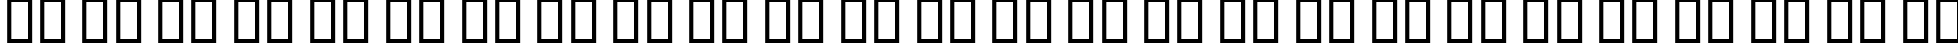 Пример написания английского алфавита шрифтом B Kaj